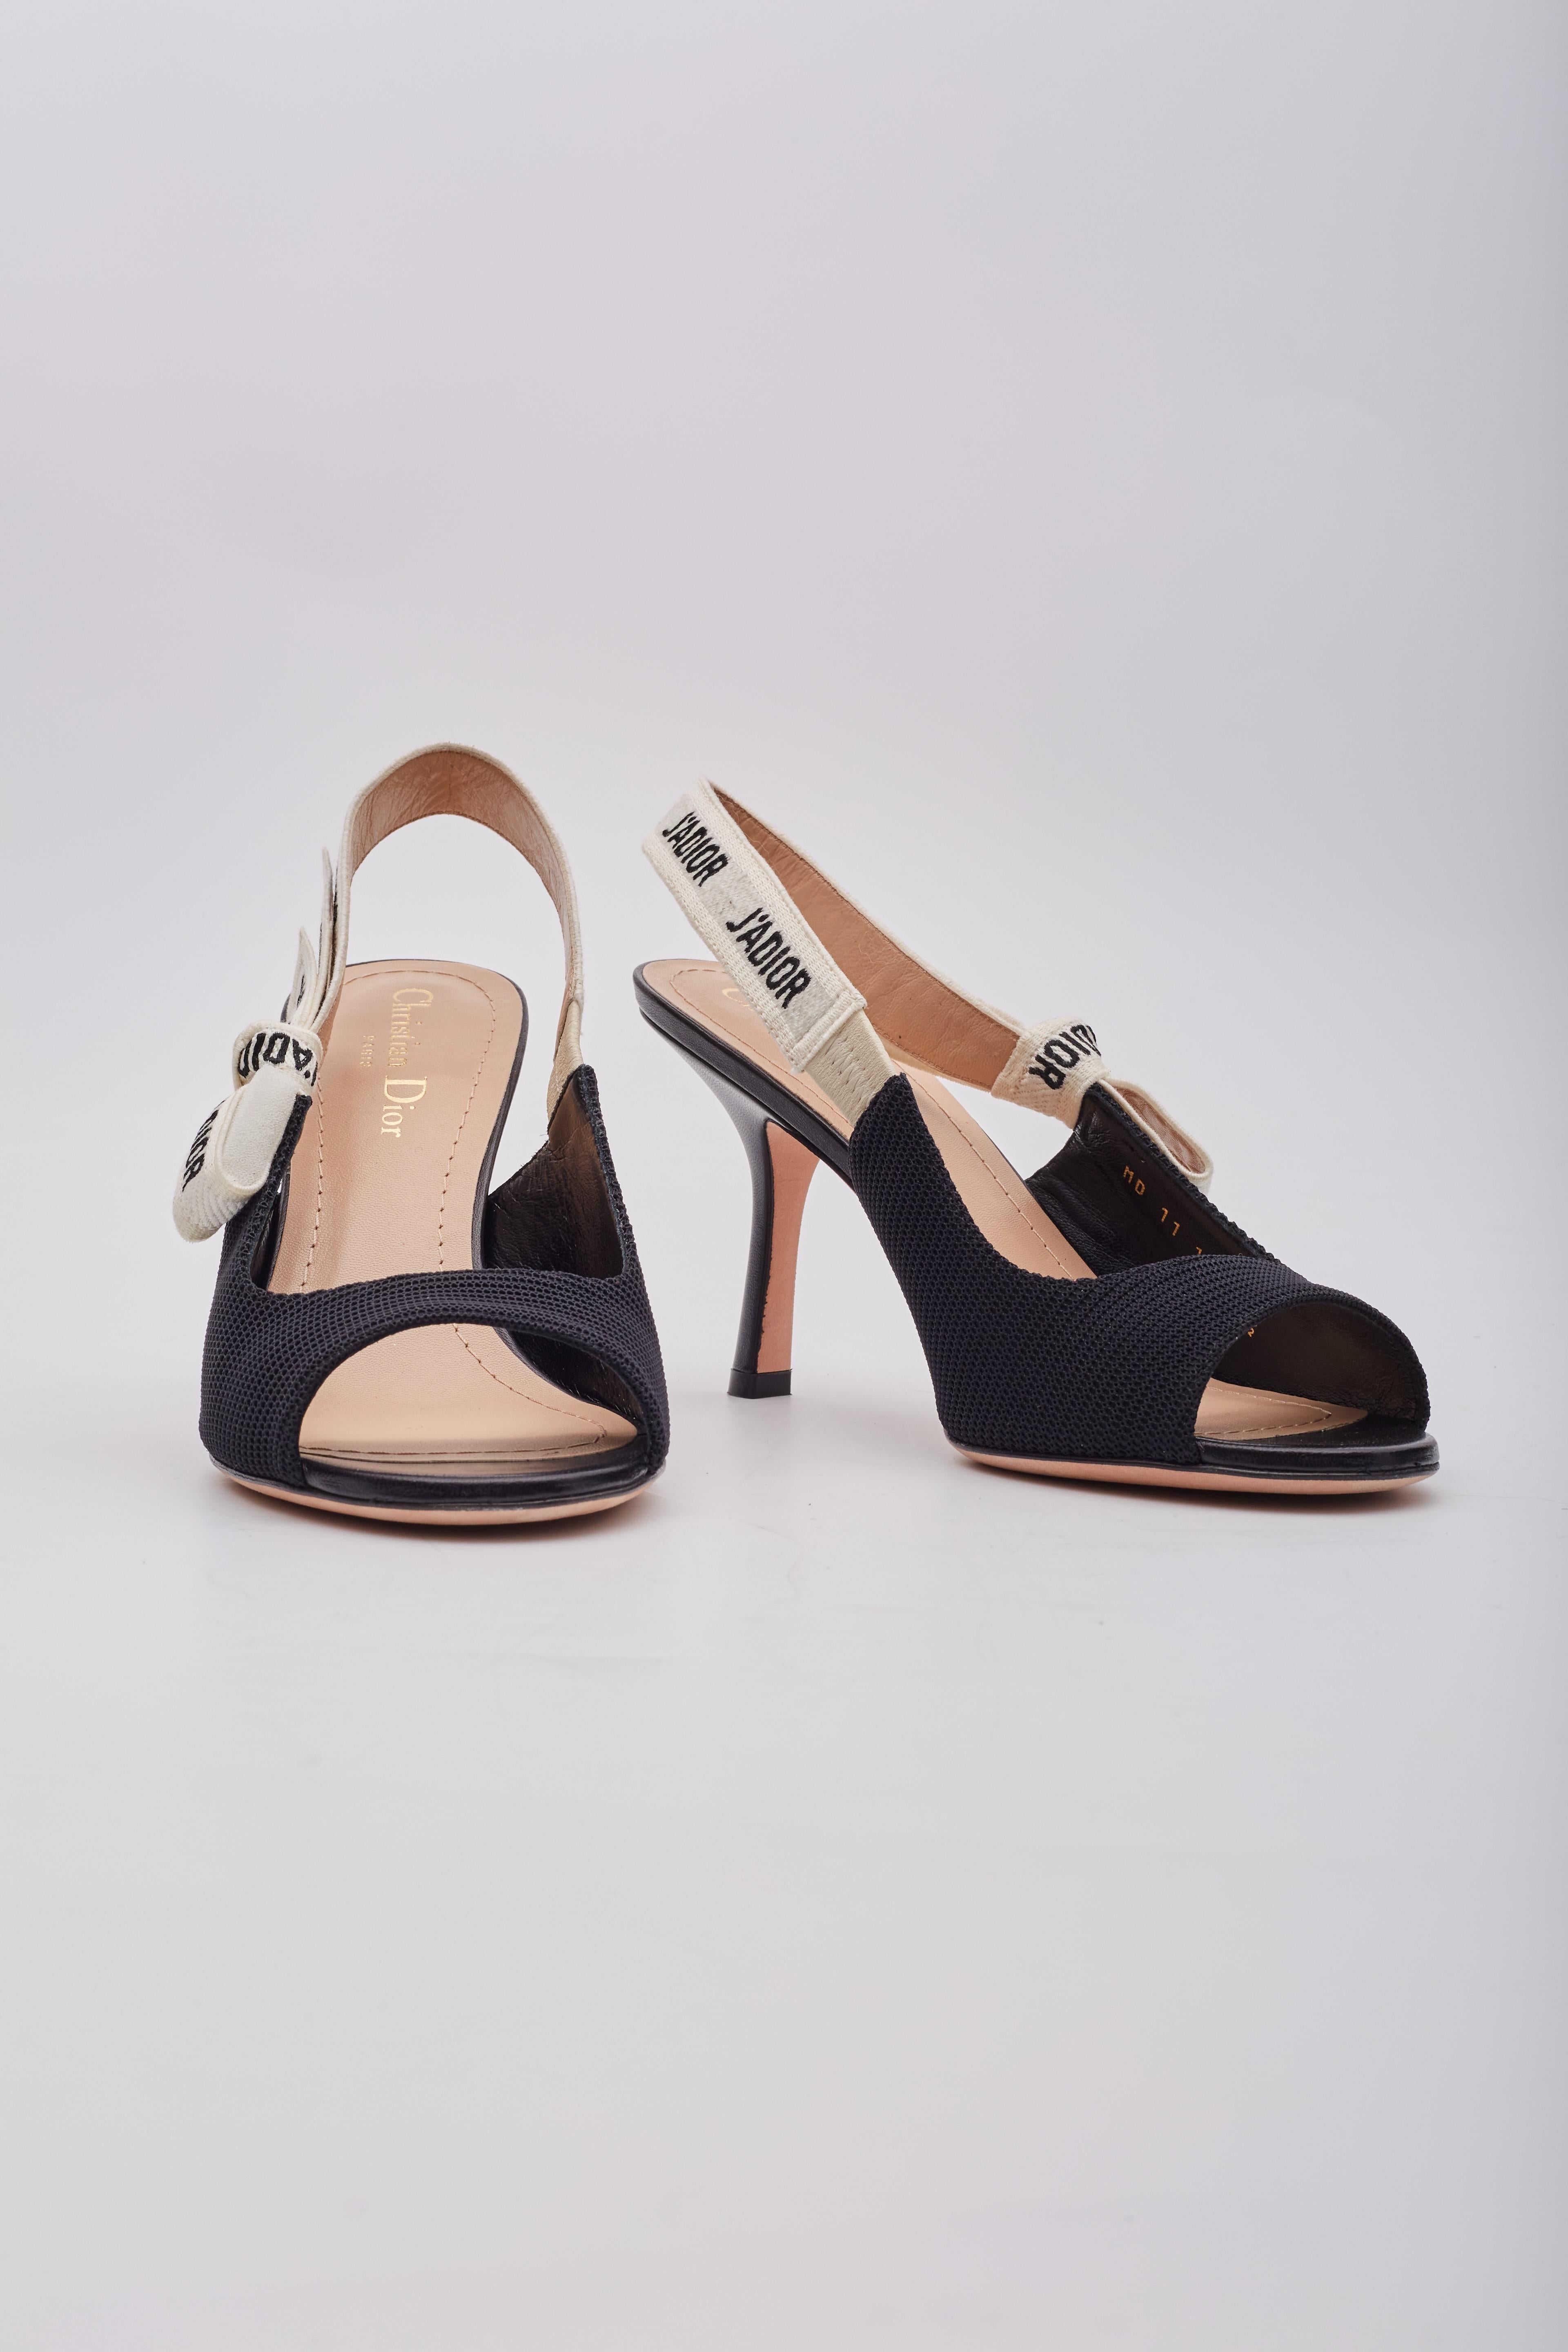 Les escarpins J'Adior sont confectionnés dans les ateliers italiens en tissu technique noir. Ces chaussures à talons sont dotées d'un ruban en coton bicolore 